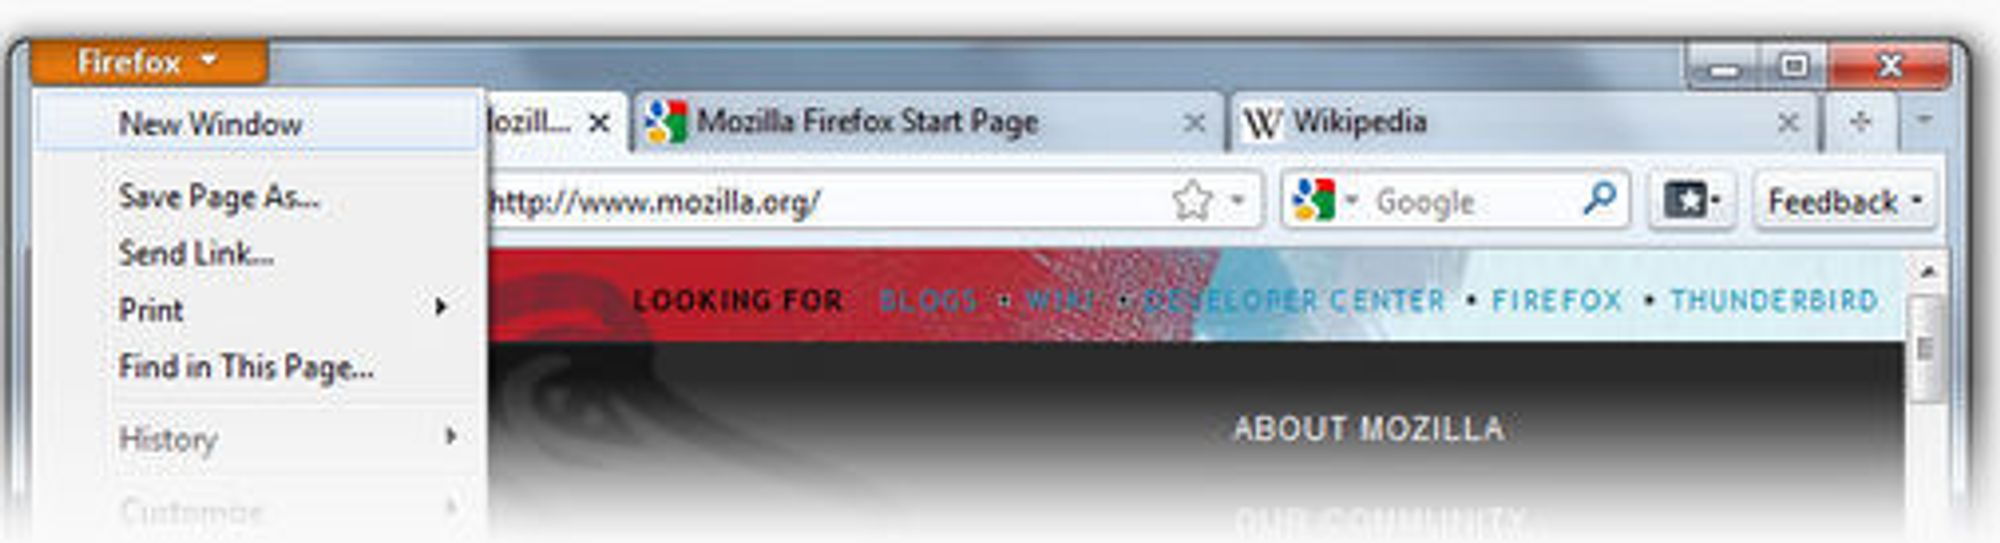 Foreløpig utseende på Firefox-knappen og fanene som er plassert i toppen av vinduet i Firefox 4 Beta 1.